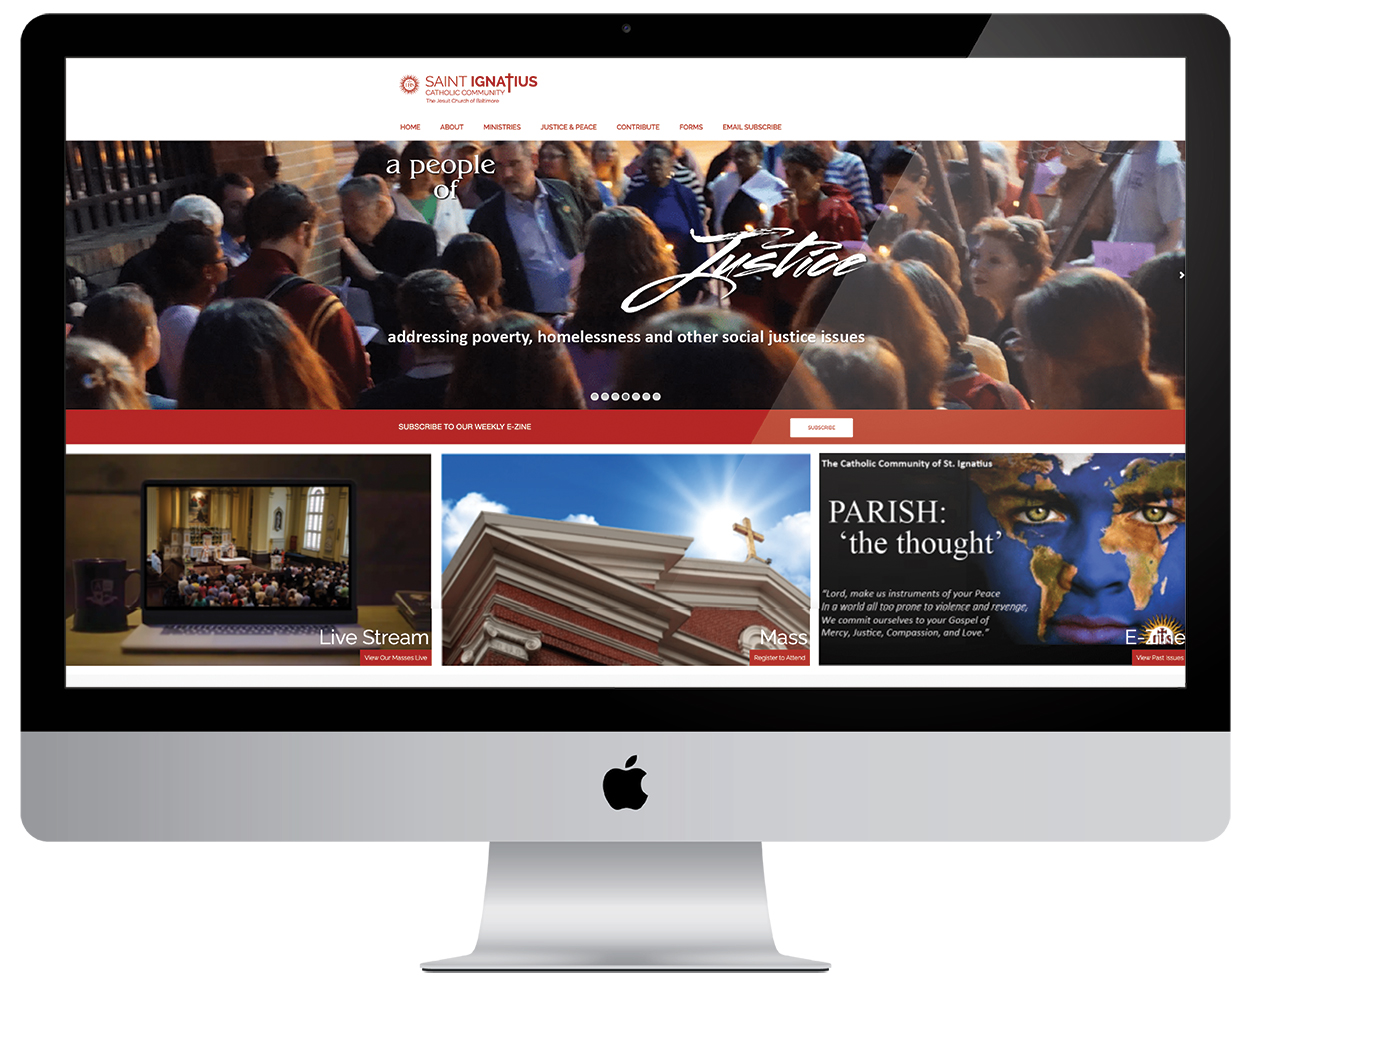 St. Ignatius Website Design — Before